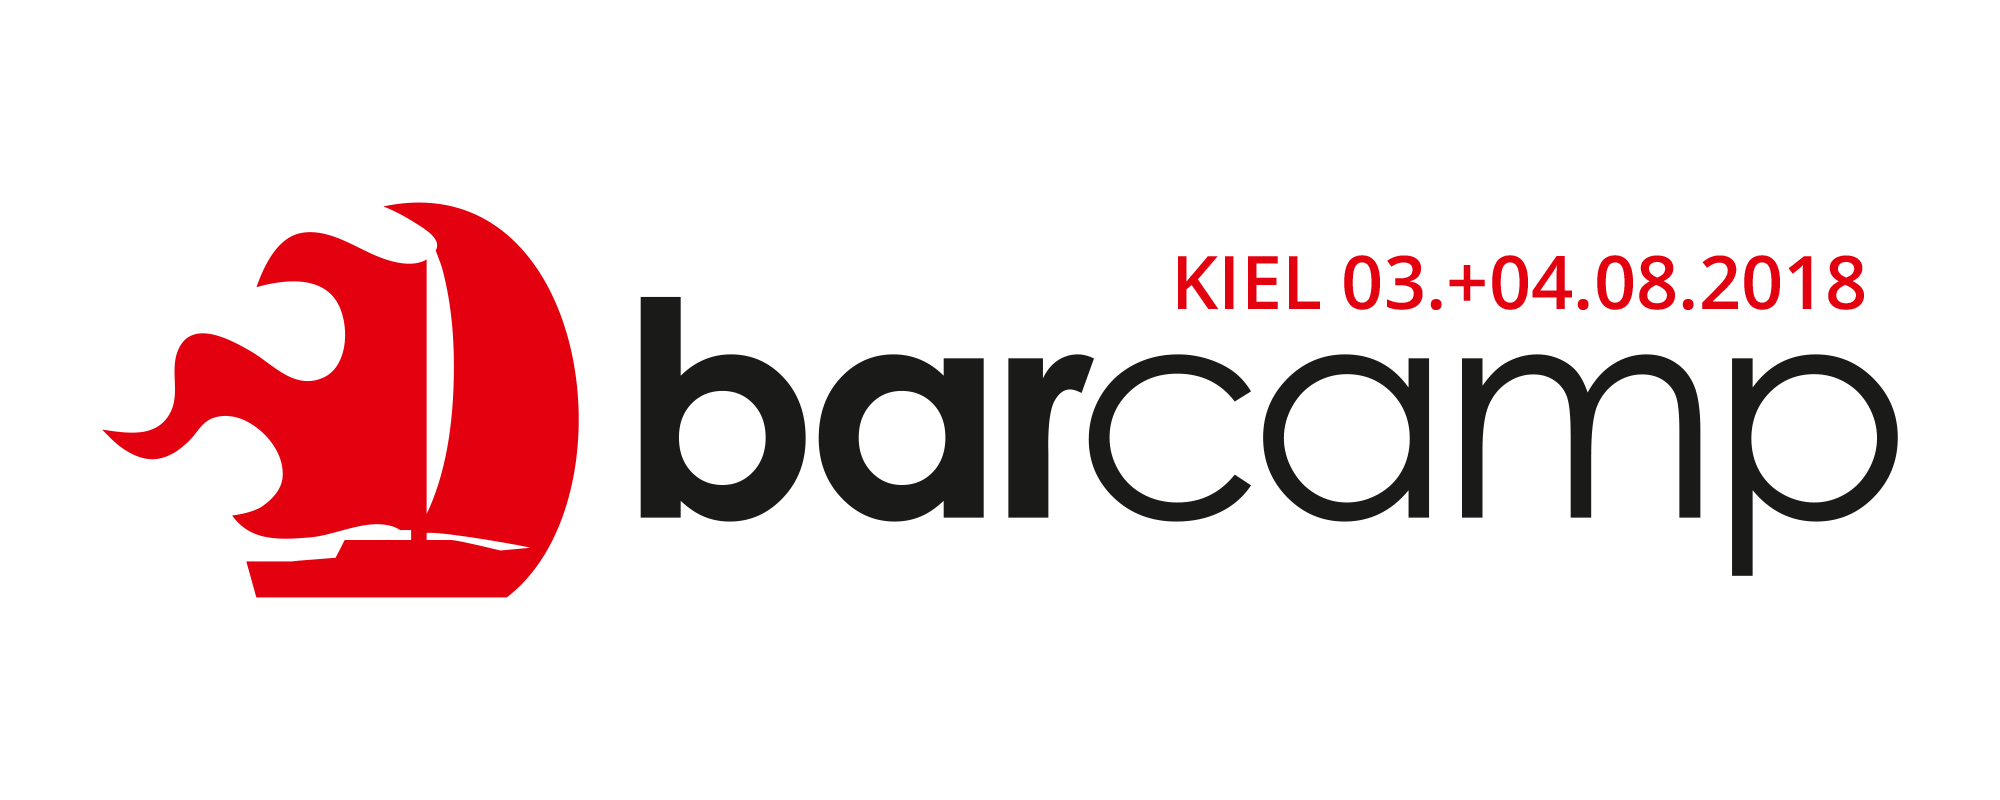 Kiel Logo - BarCamp Kiel 2019 Kiel 2019. Sei dabei! BarCamp Kiel 2019